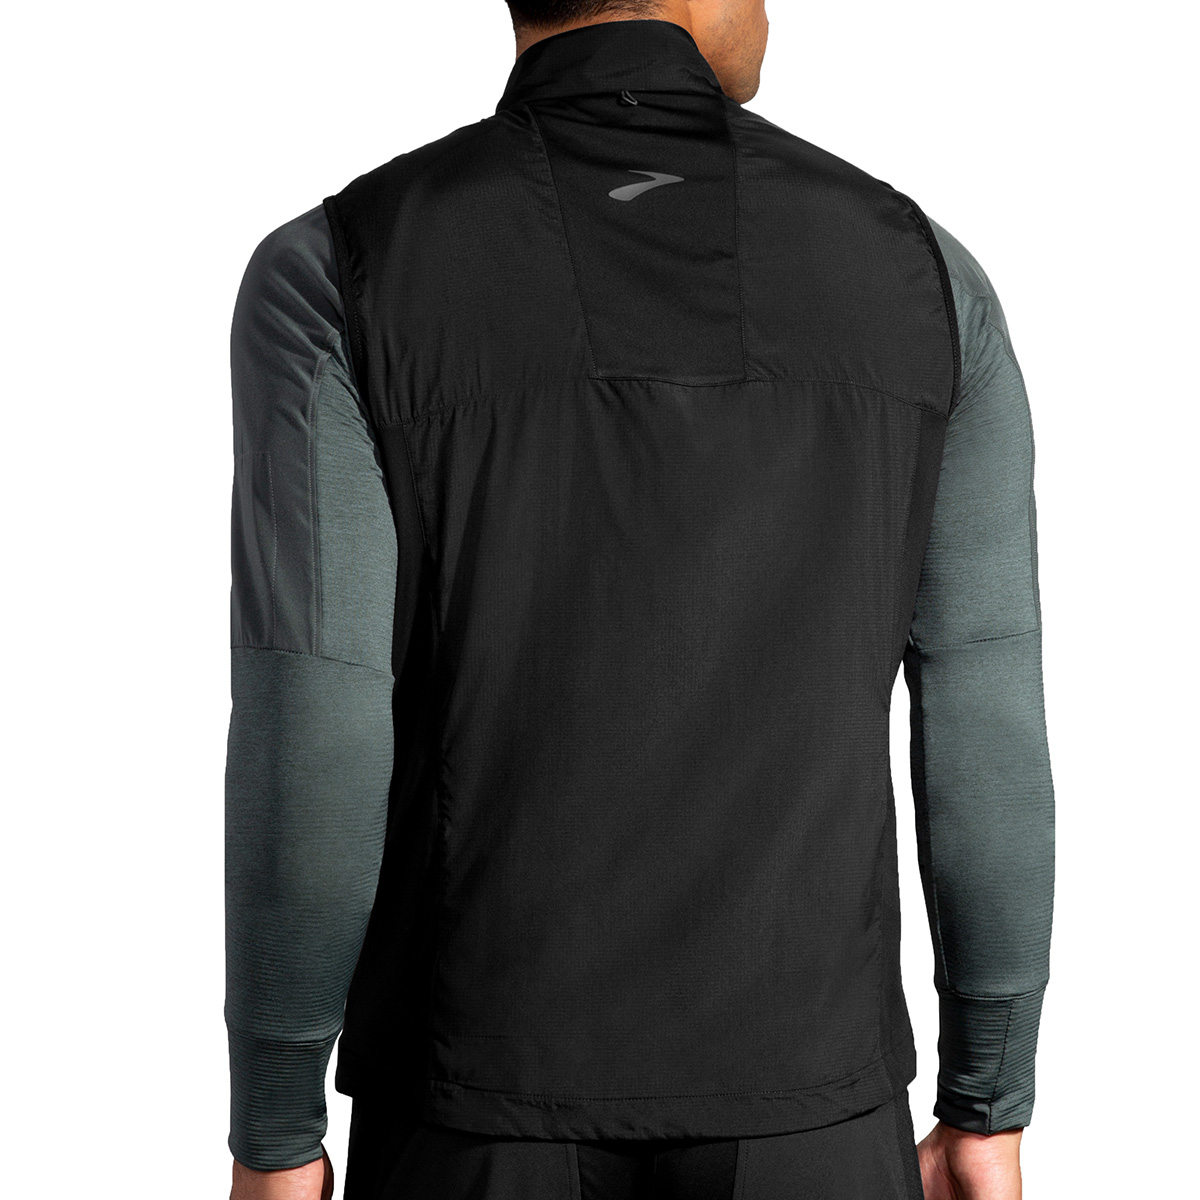 Brooks Shield Hybrid Vest, , large image number null